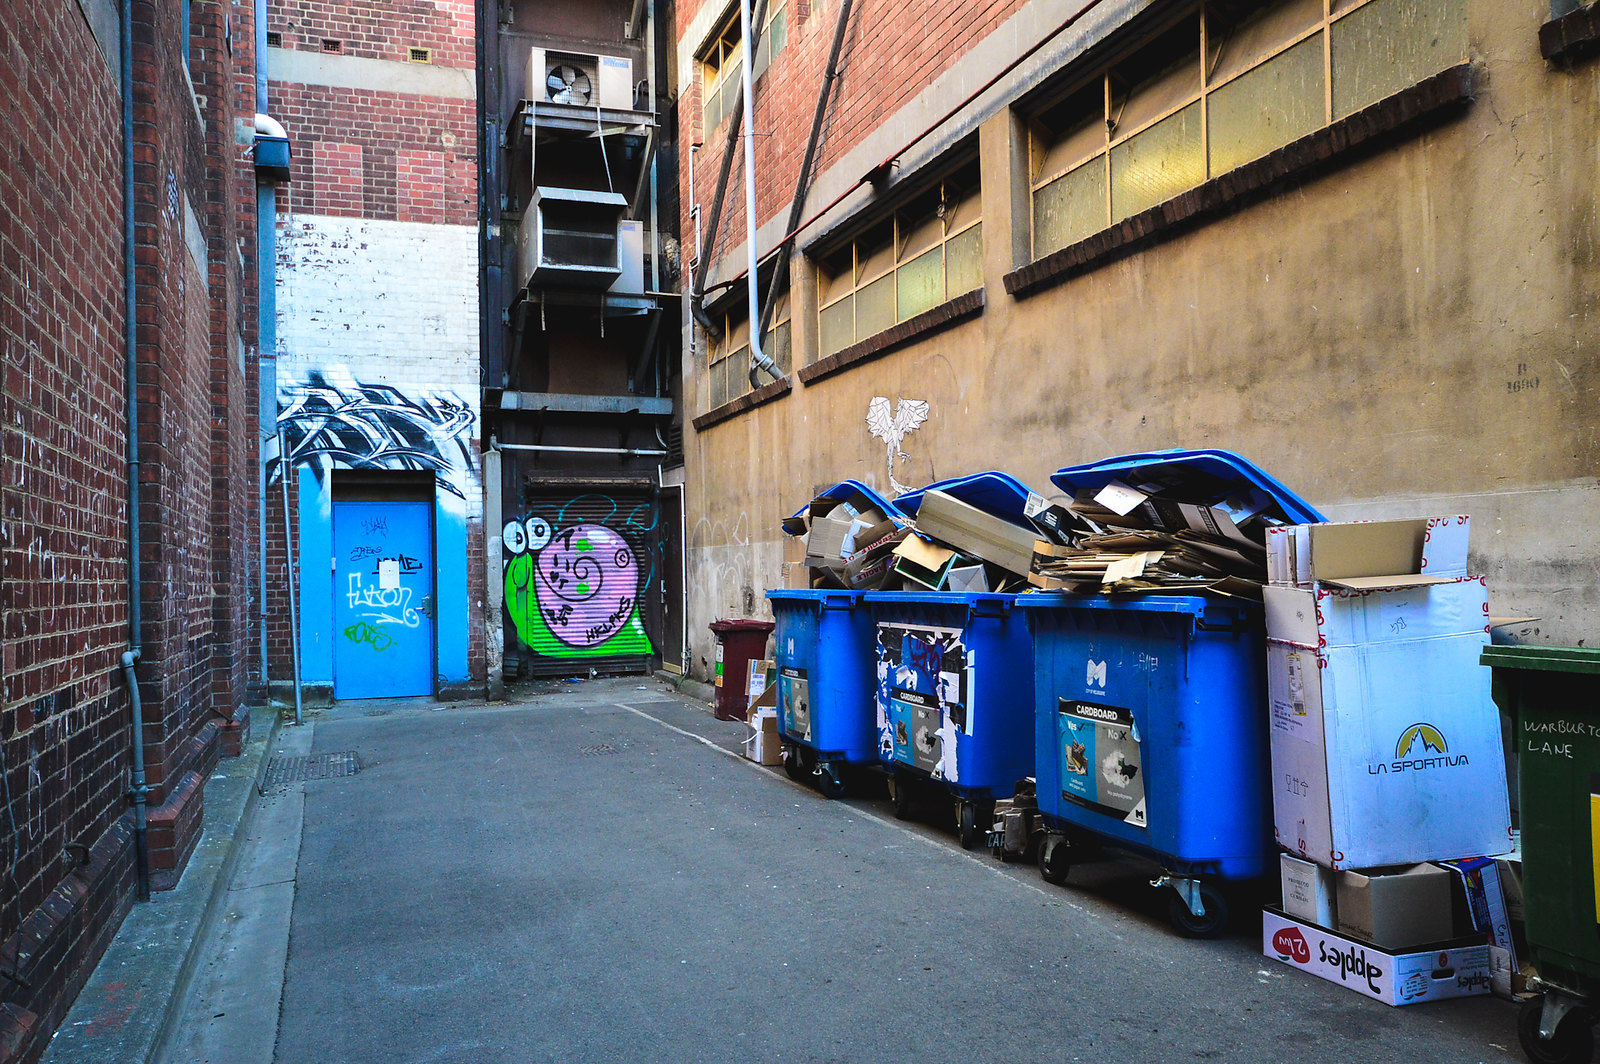 Melbourne Warburton Lane Street Art 2015